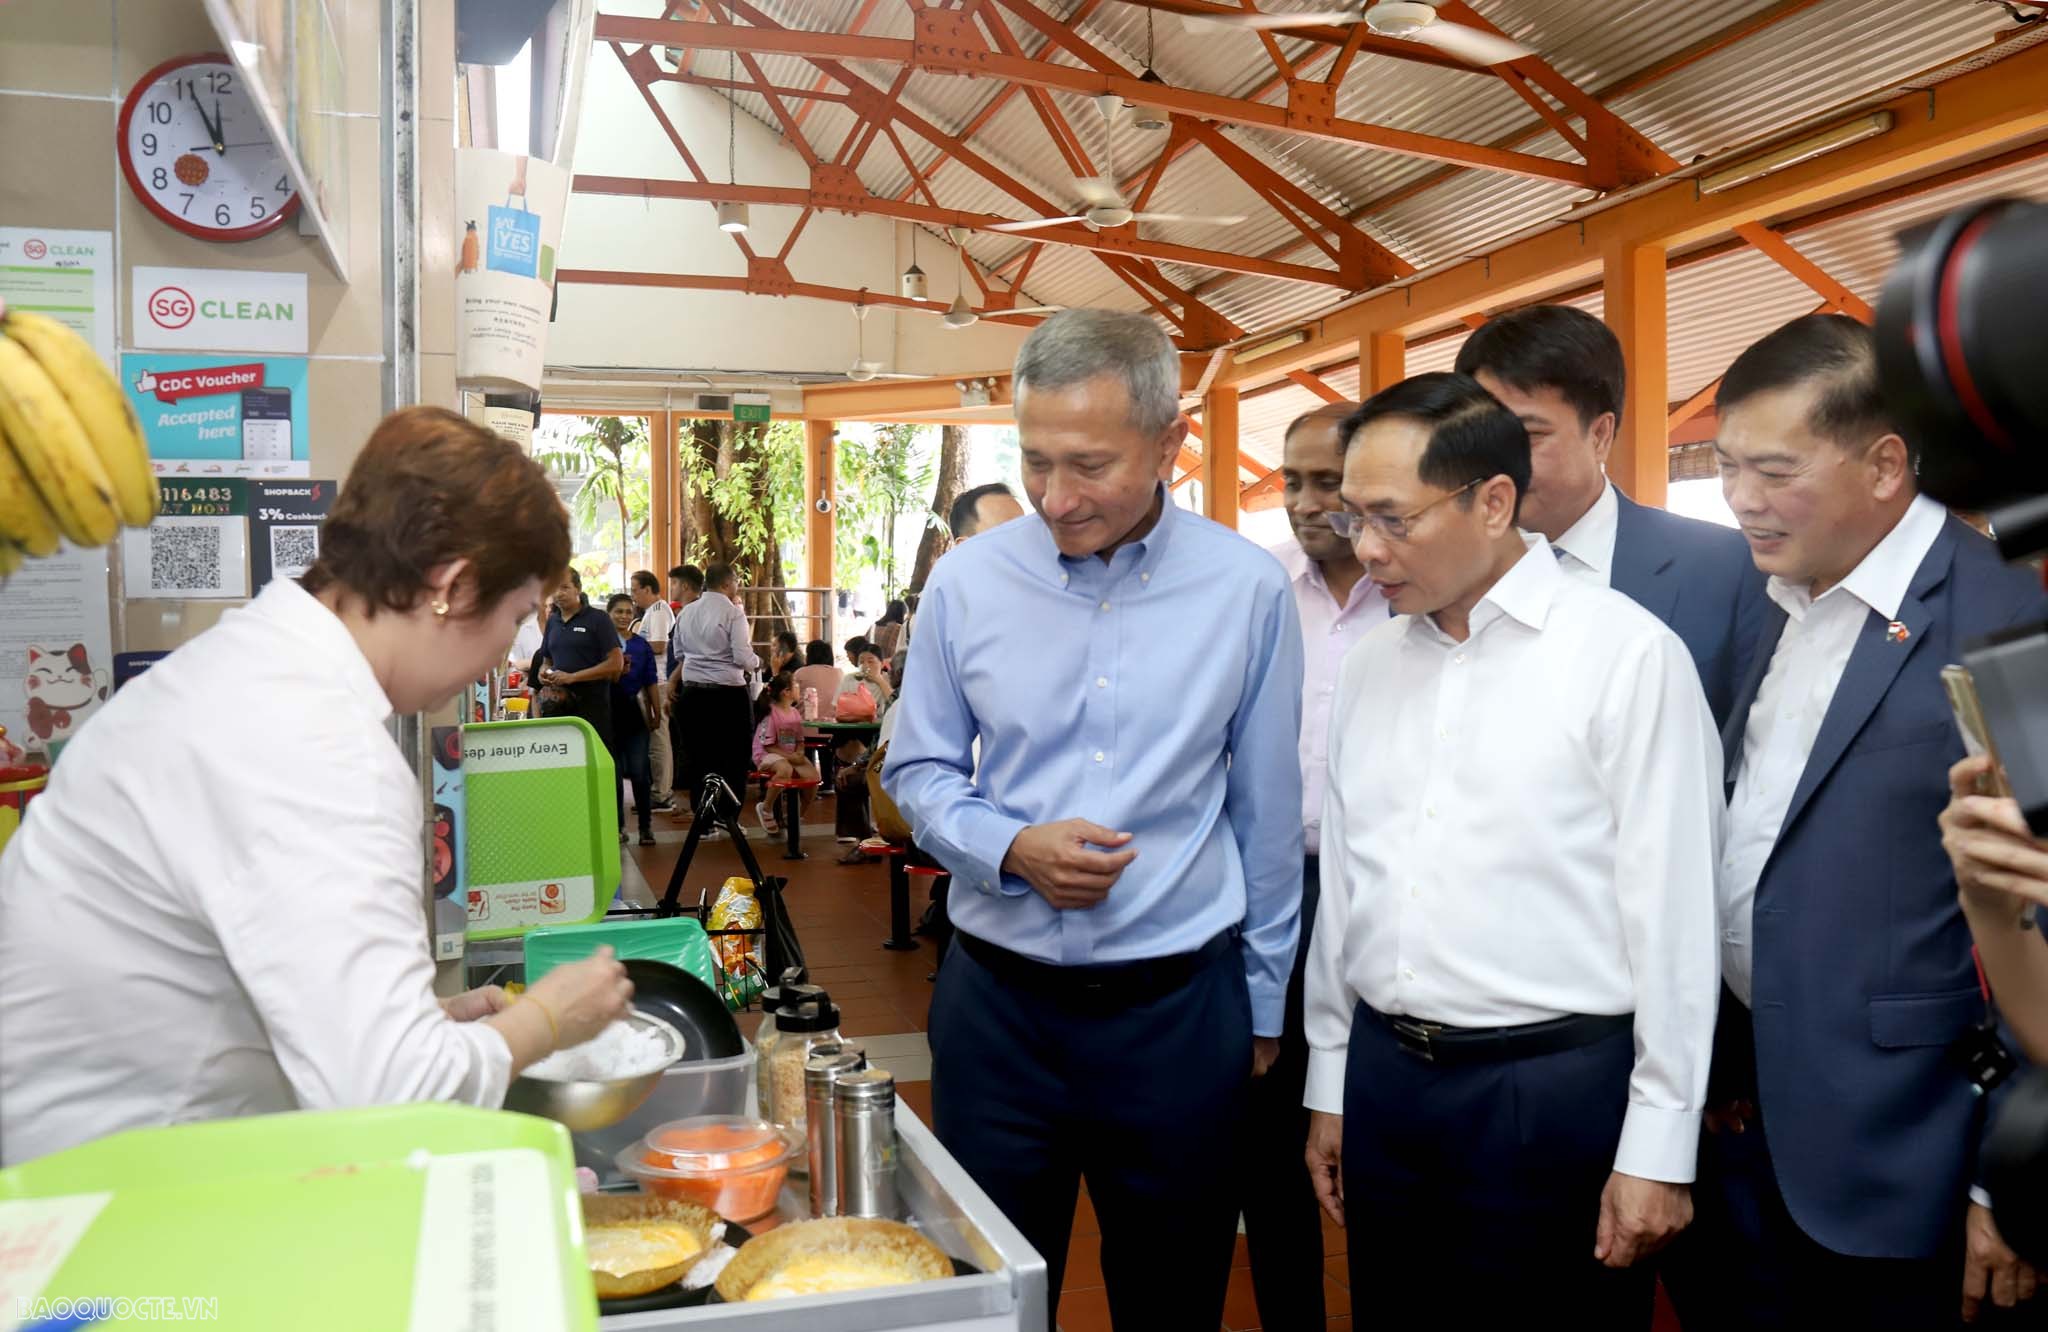 Bộ trưởng Ngoại giao Bùi Thanh Sơn tham quan trung tâm văn hóa ẩm thực đường phố Singapore và dâng hoa tại Tượng đài Chủ tịch Hồ Chí Minh